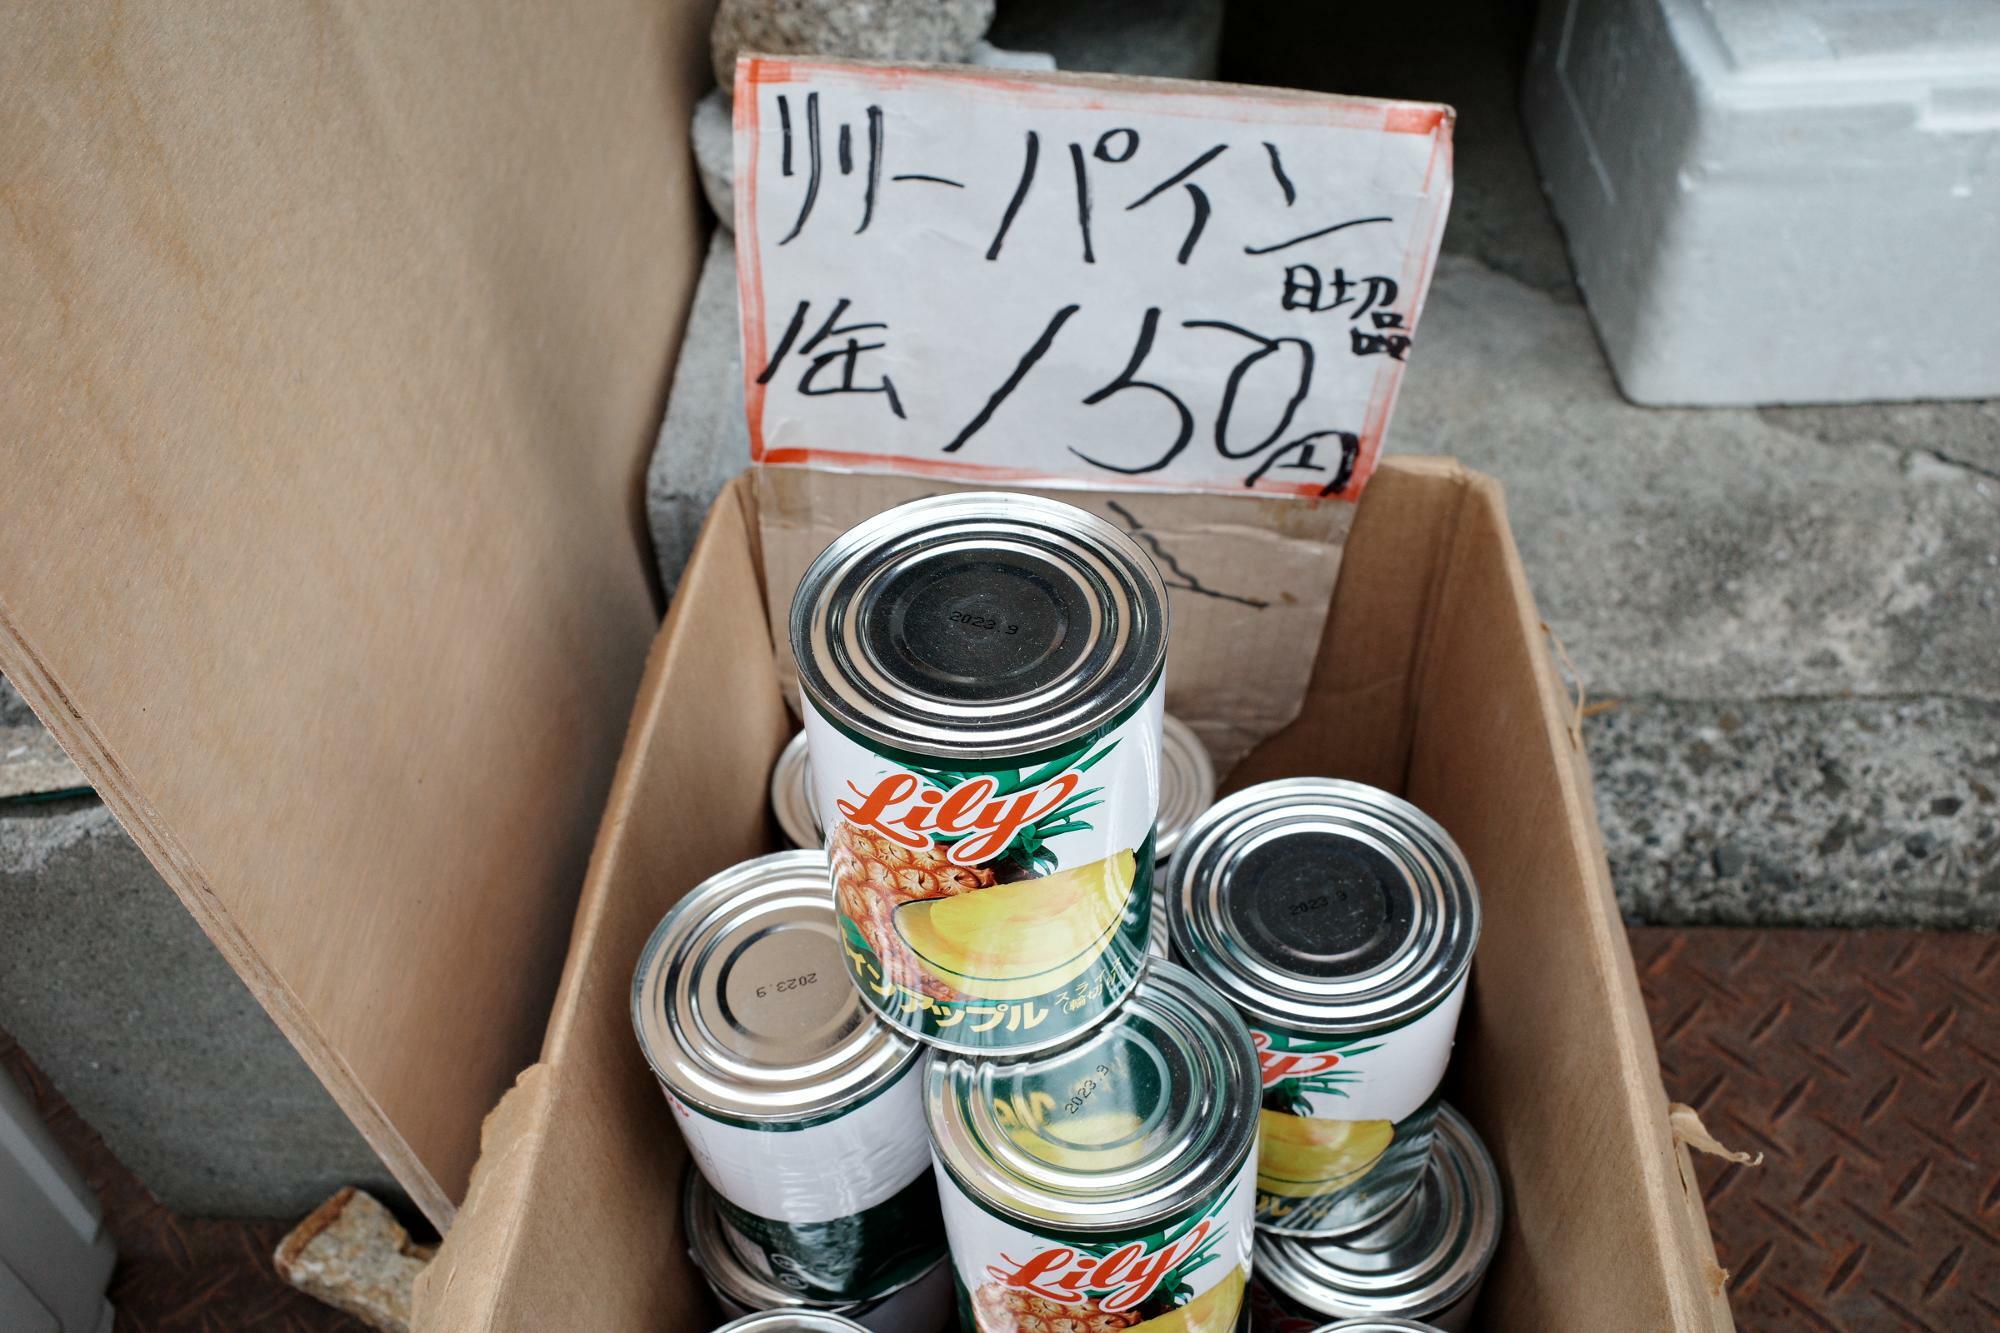 「リリーパイン」日切れ品 1缶 150円(税込)